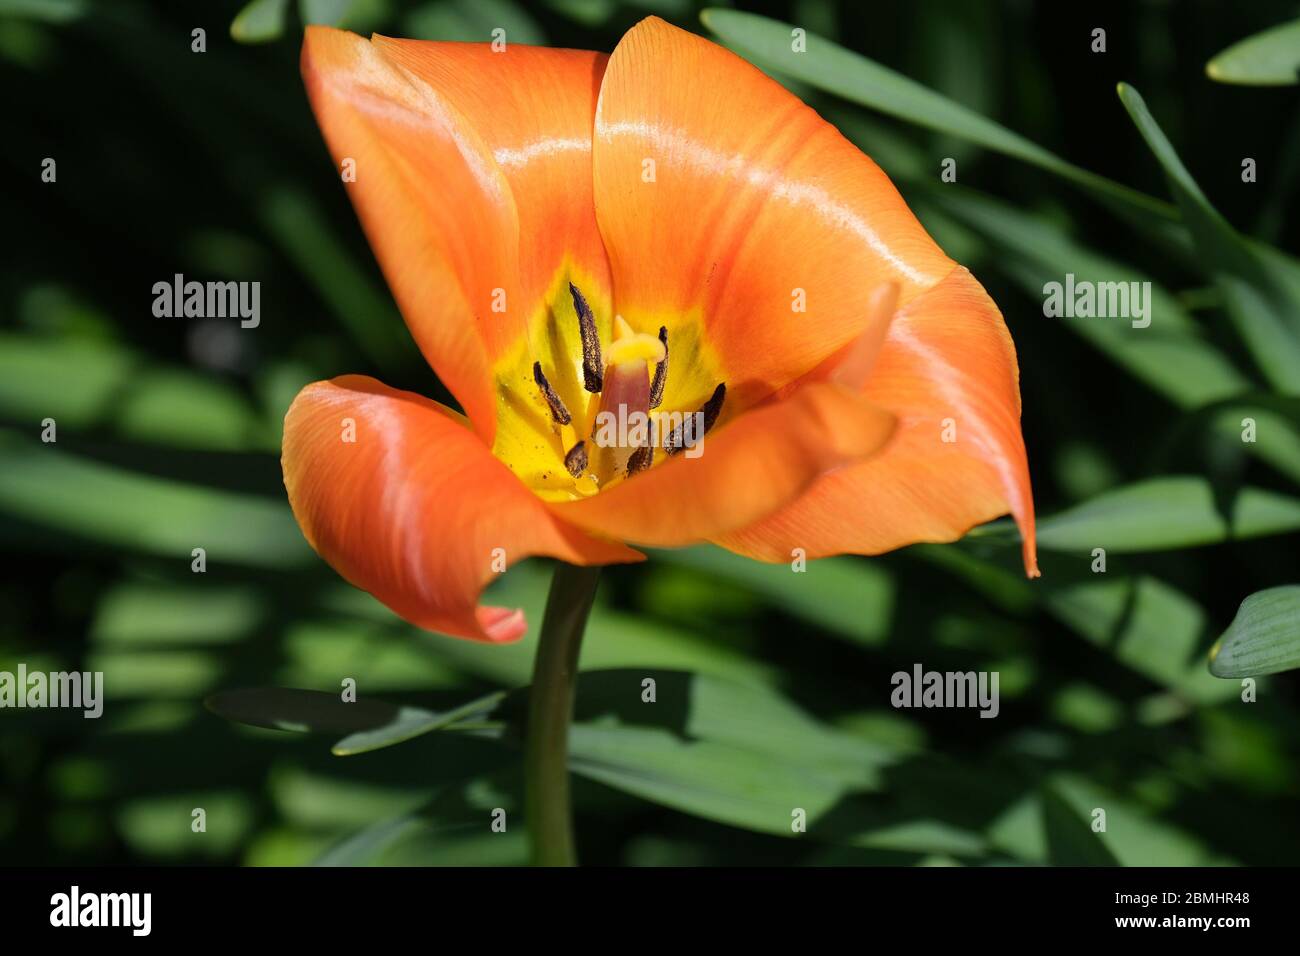 Gros plan de tulipe orange sauvage avec de l'endurance et du pollen Banque D'Images